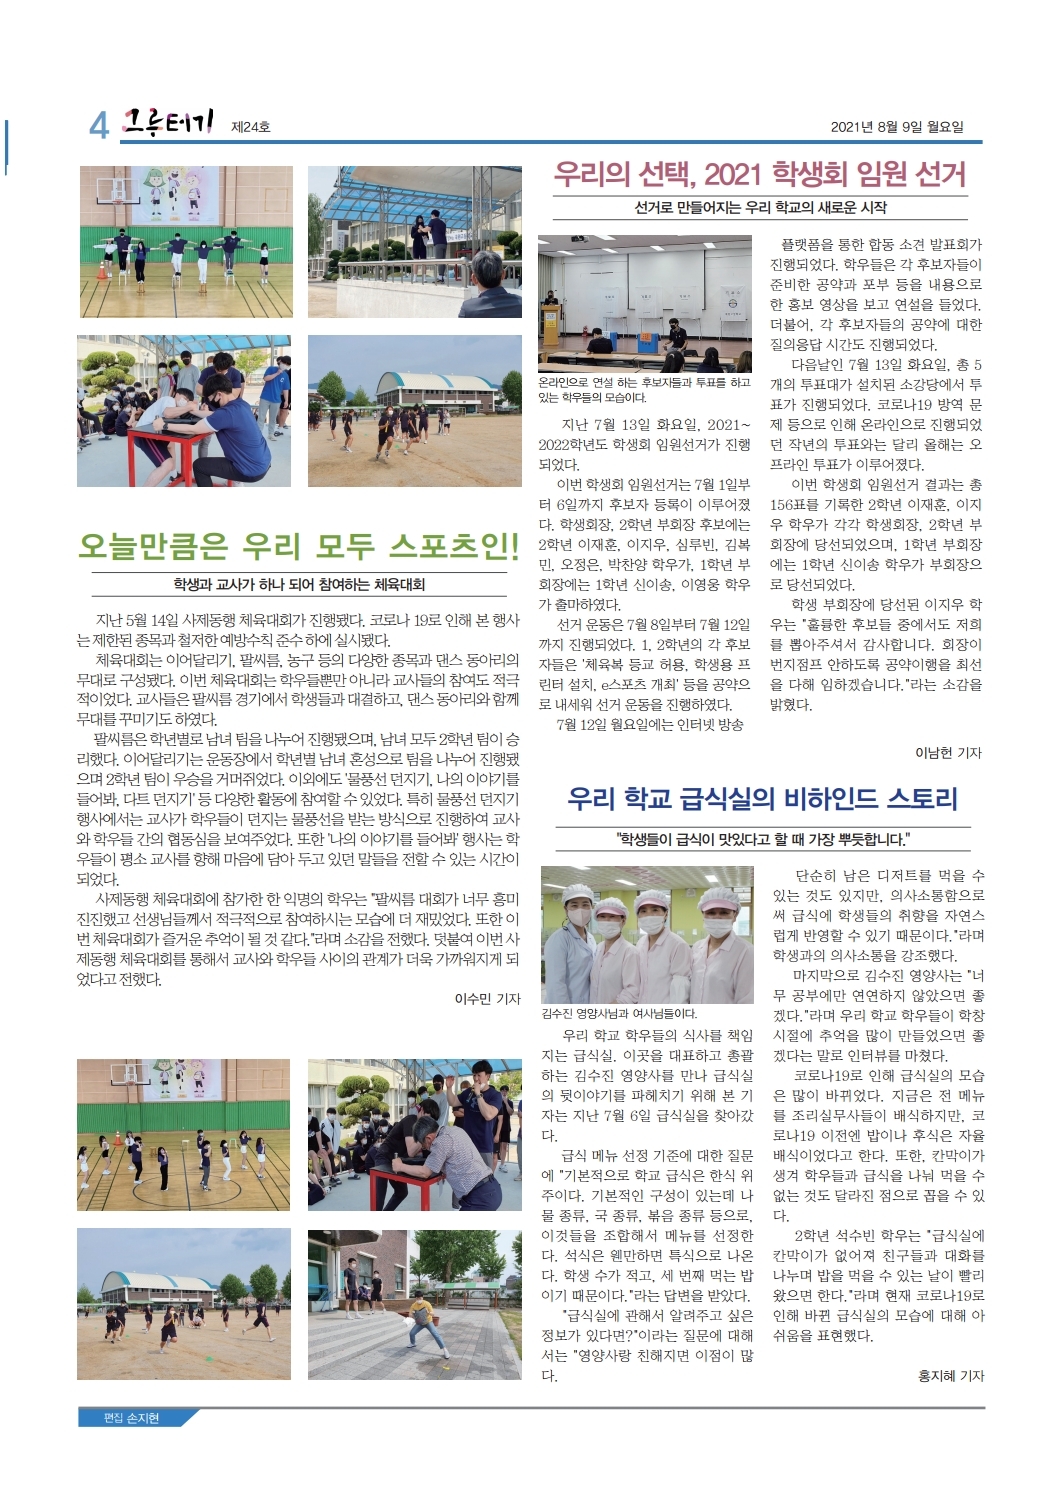 국원고 학생회 신문(21.8.9) (4)